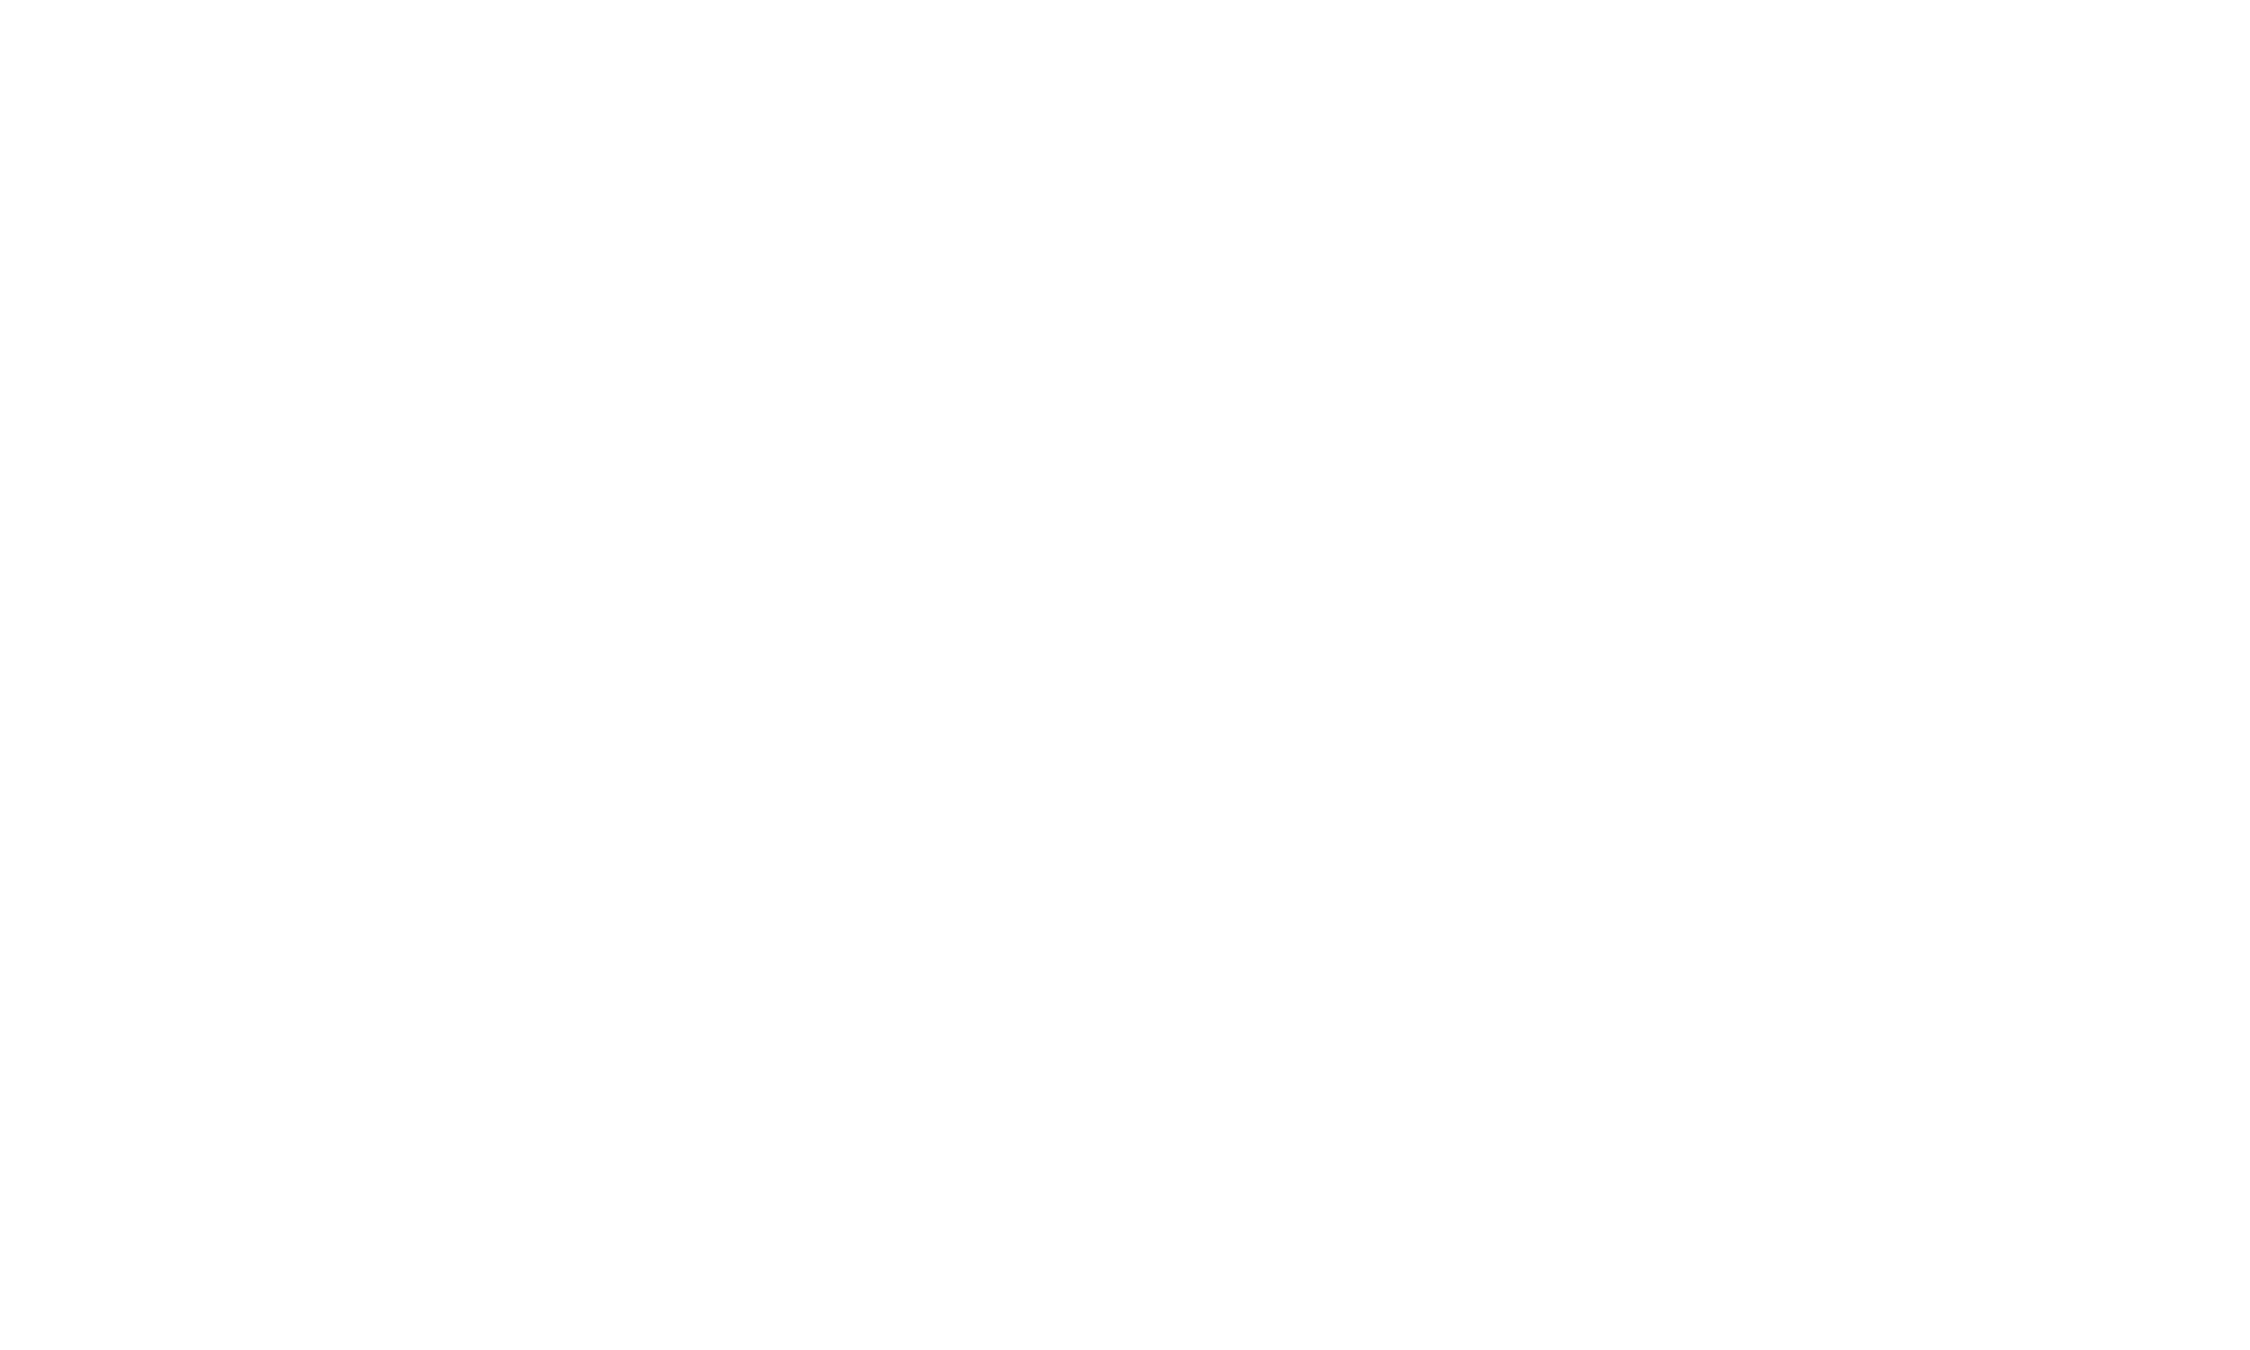 Flex with revolex table logo white